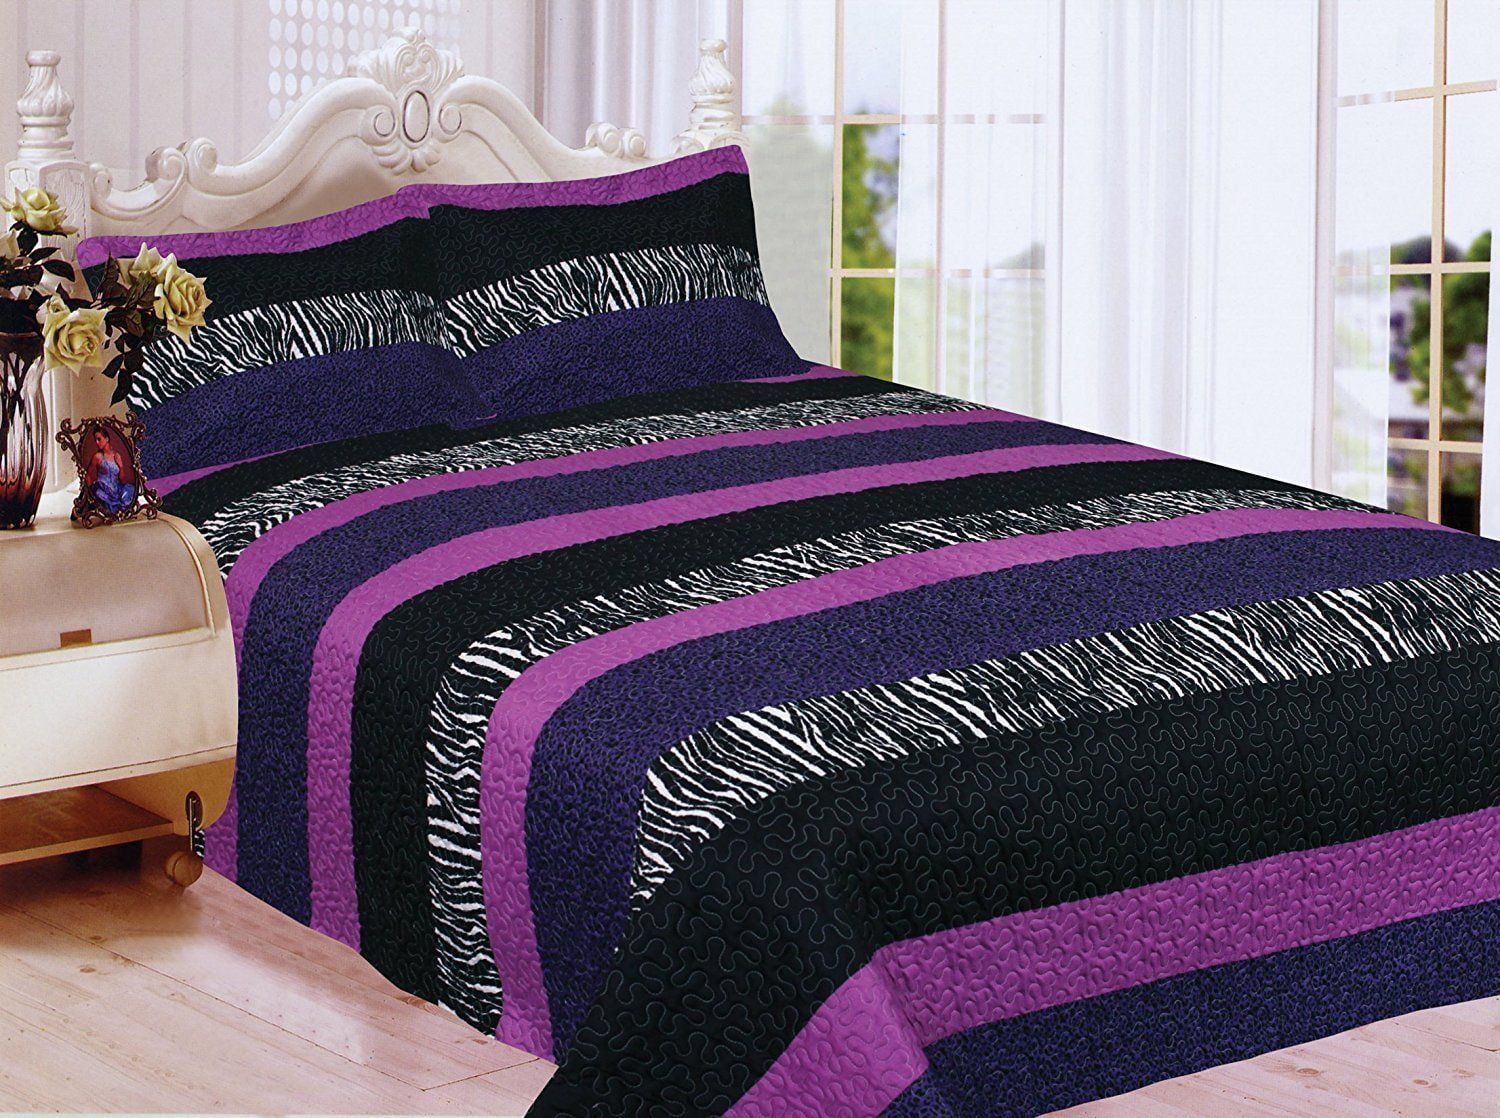 Fancy Linen 3pc Full Bedspread Teens Zebra Leopard Purple Pink White Black New